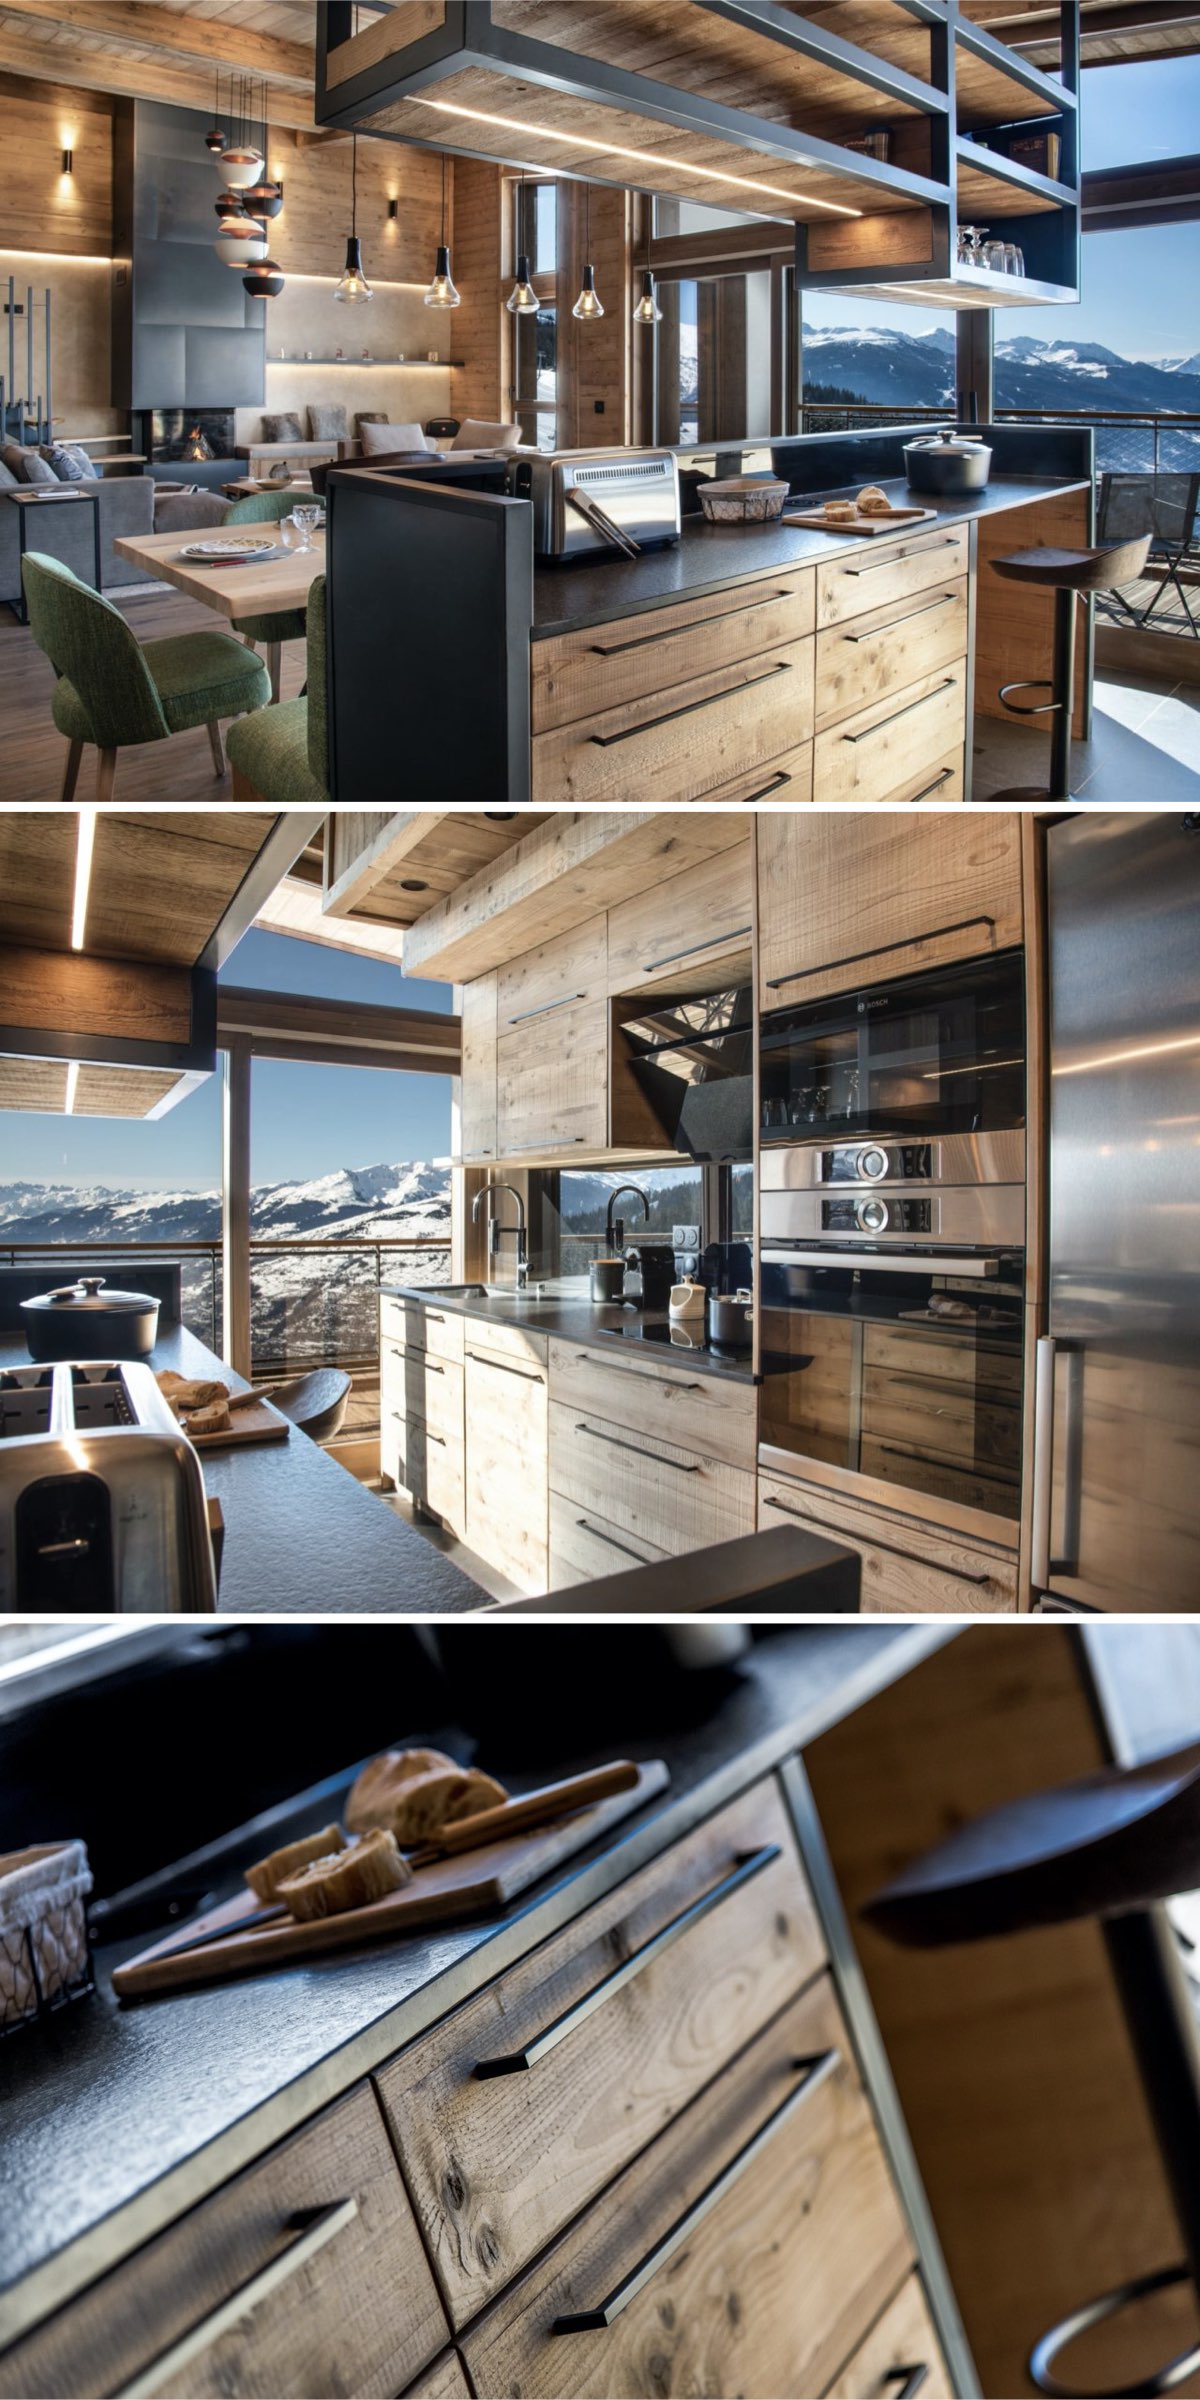 rénovation d'un appartement de montagne style chalet cuisine bois métal noire moderne